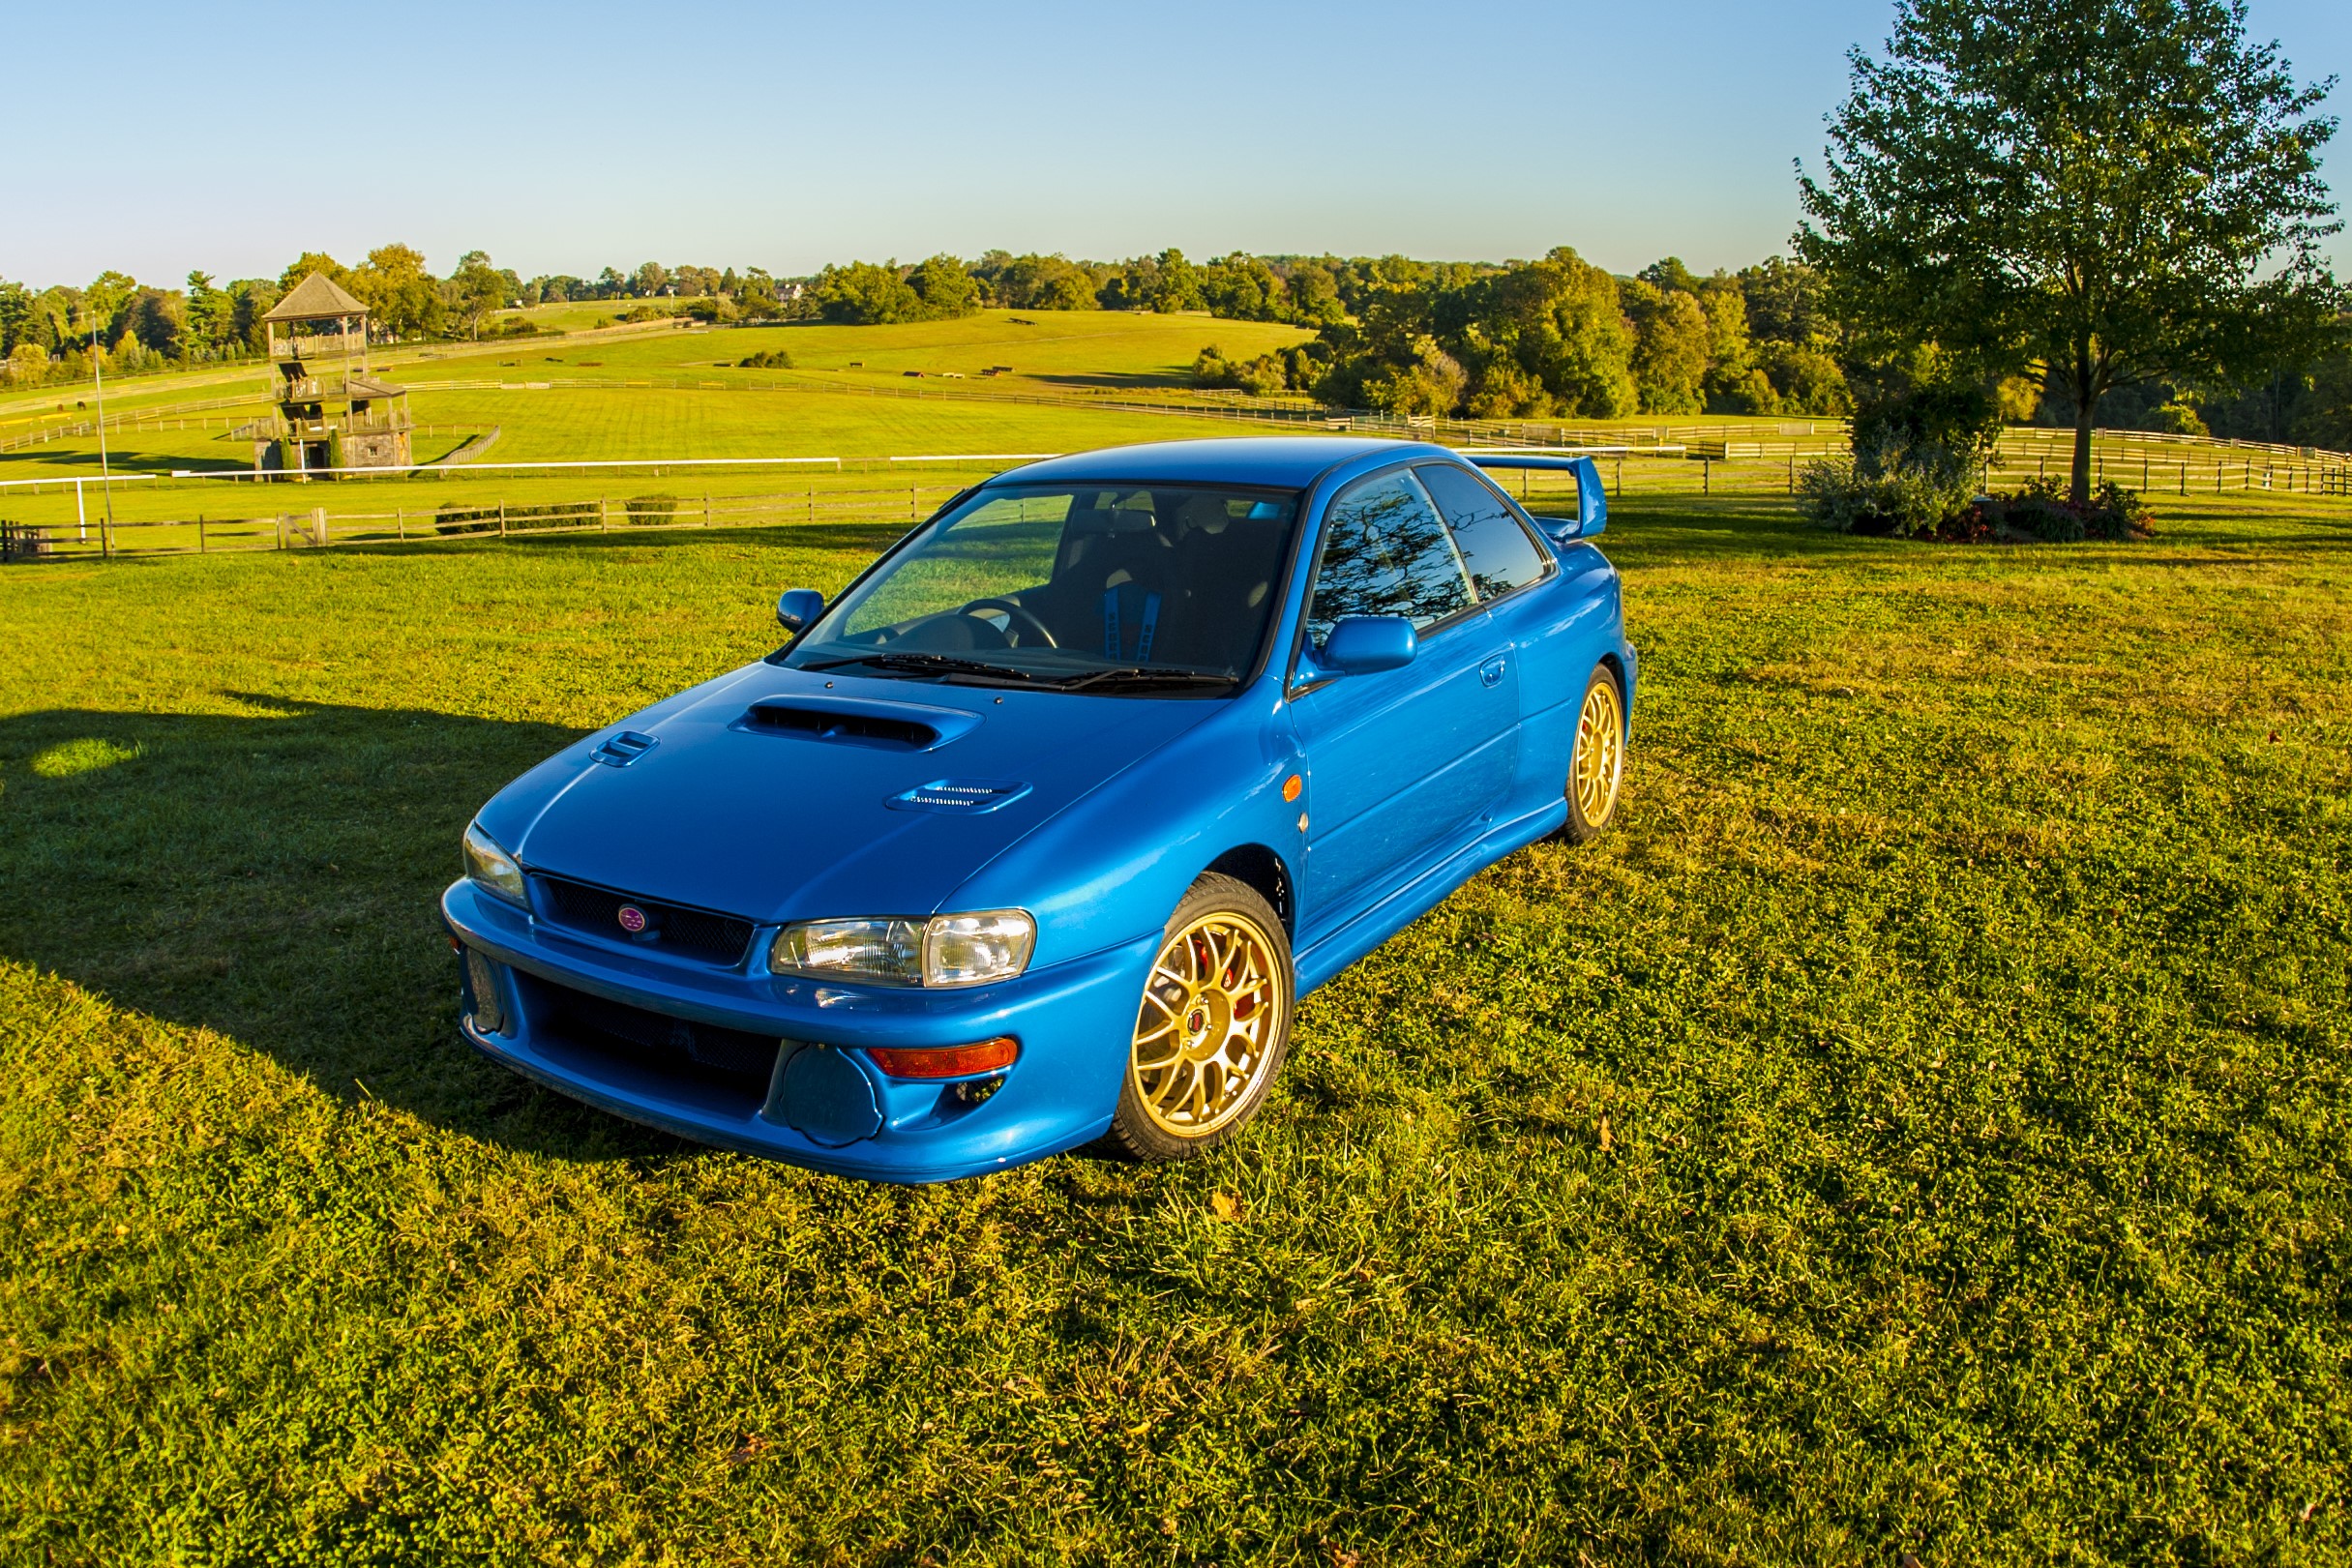 Subaru STI